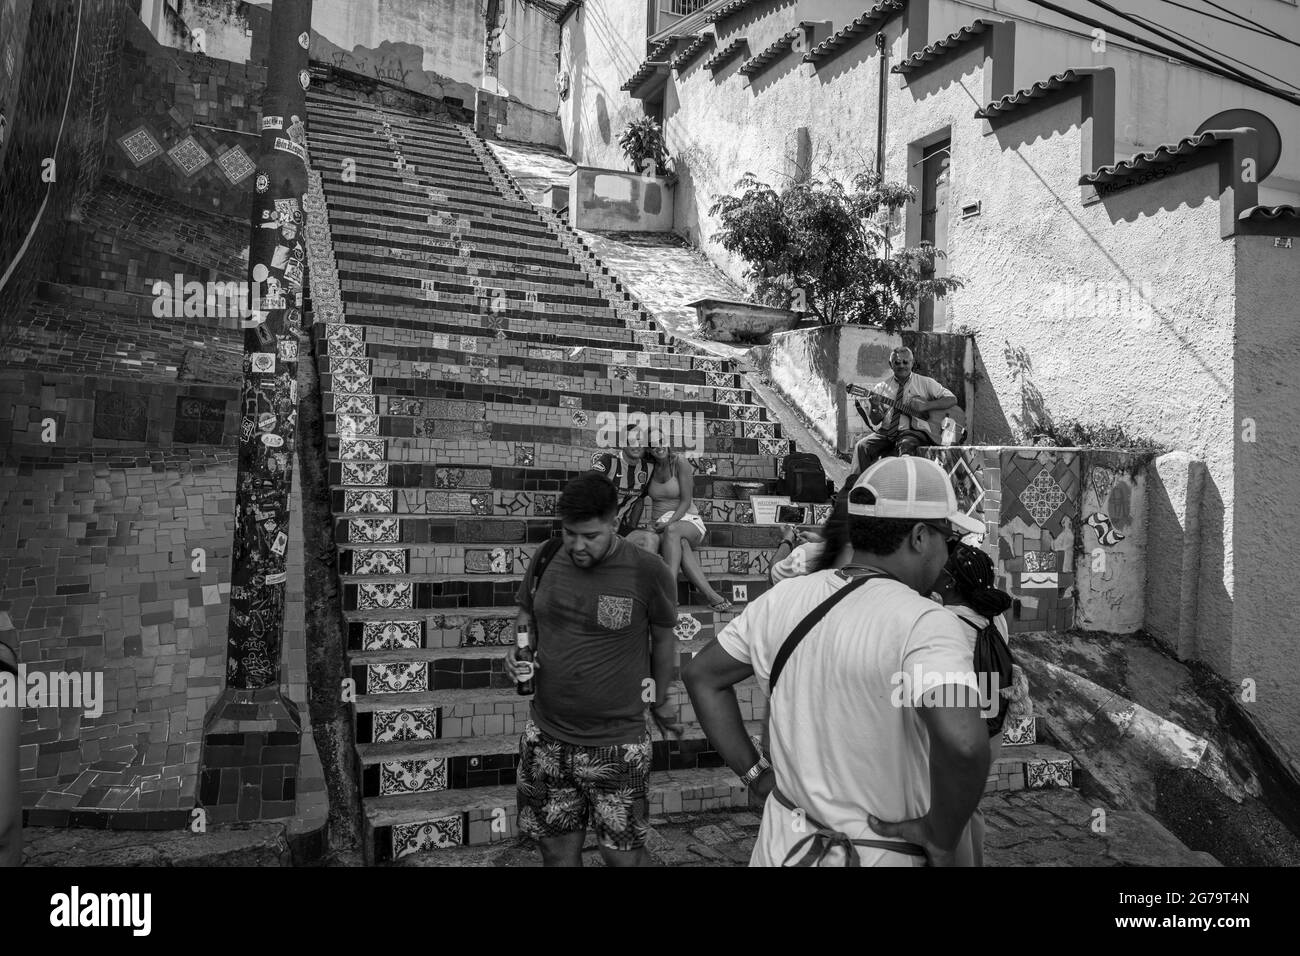 Las escaleras Selaron (o escaleras Lapa) que están cubiertas por azulejos coloridos de todo el mundo, es una de las principales atracciones turísticas de Río de Janeiro. Foto de stock